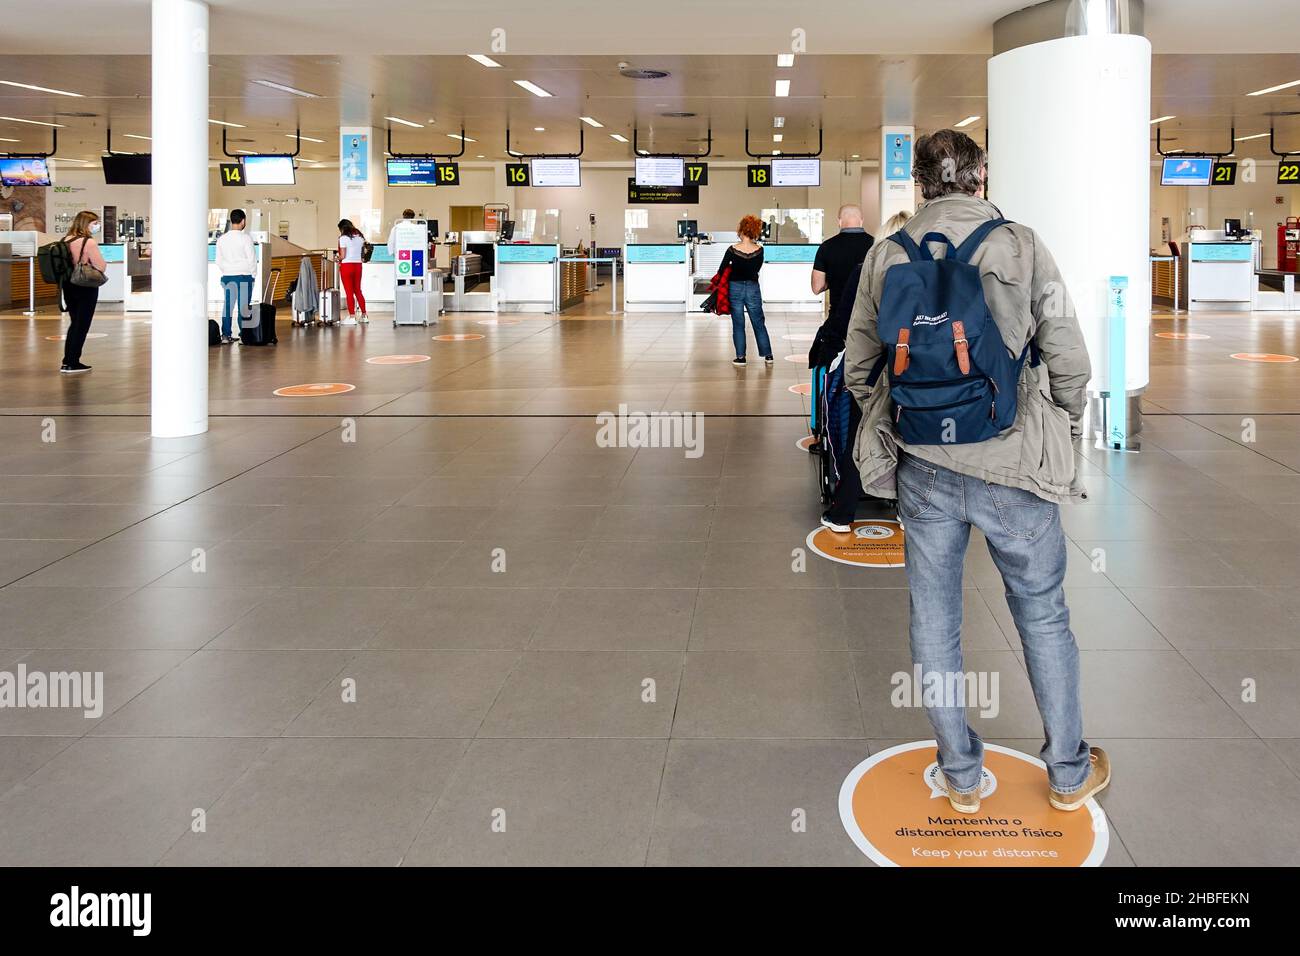 Des panneaux « Keep Your distance » s'indiquent à l'aéroport de Faro, au Portugal, car les voyageurs font la queue pour s'enregistrer pour leur vol Banque D'Images